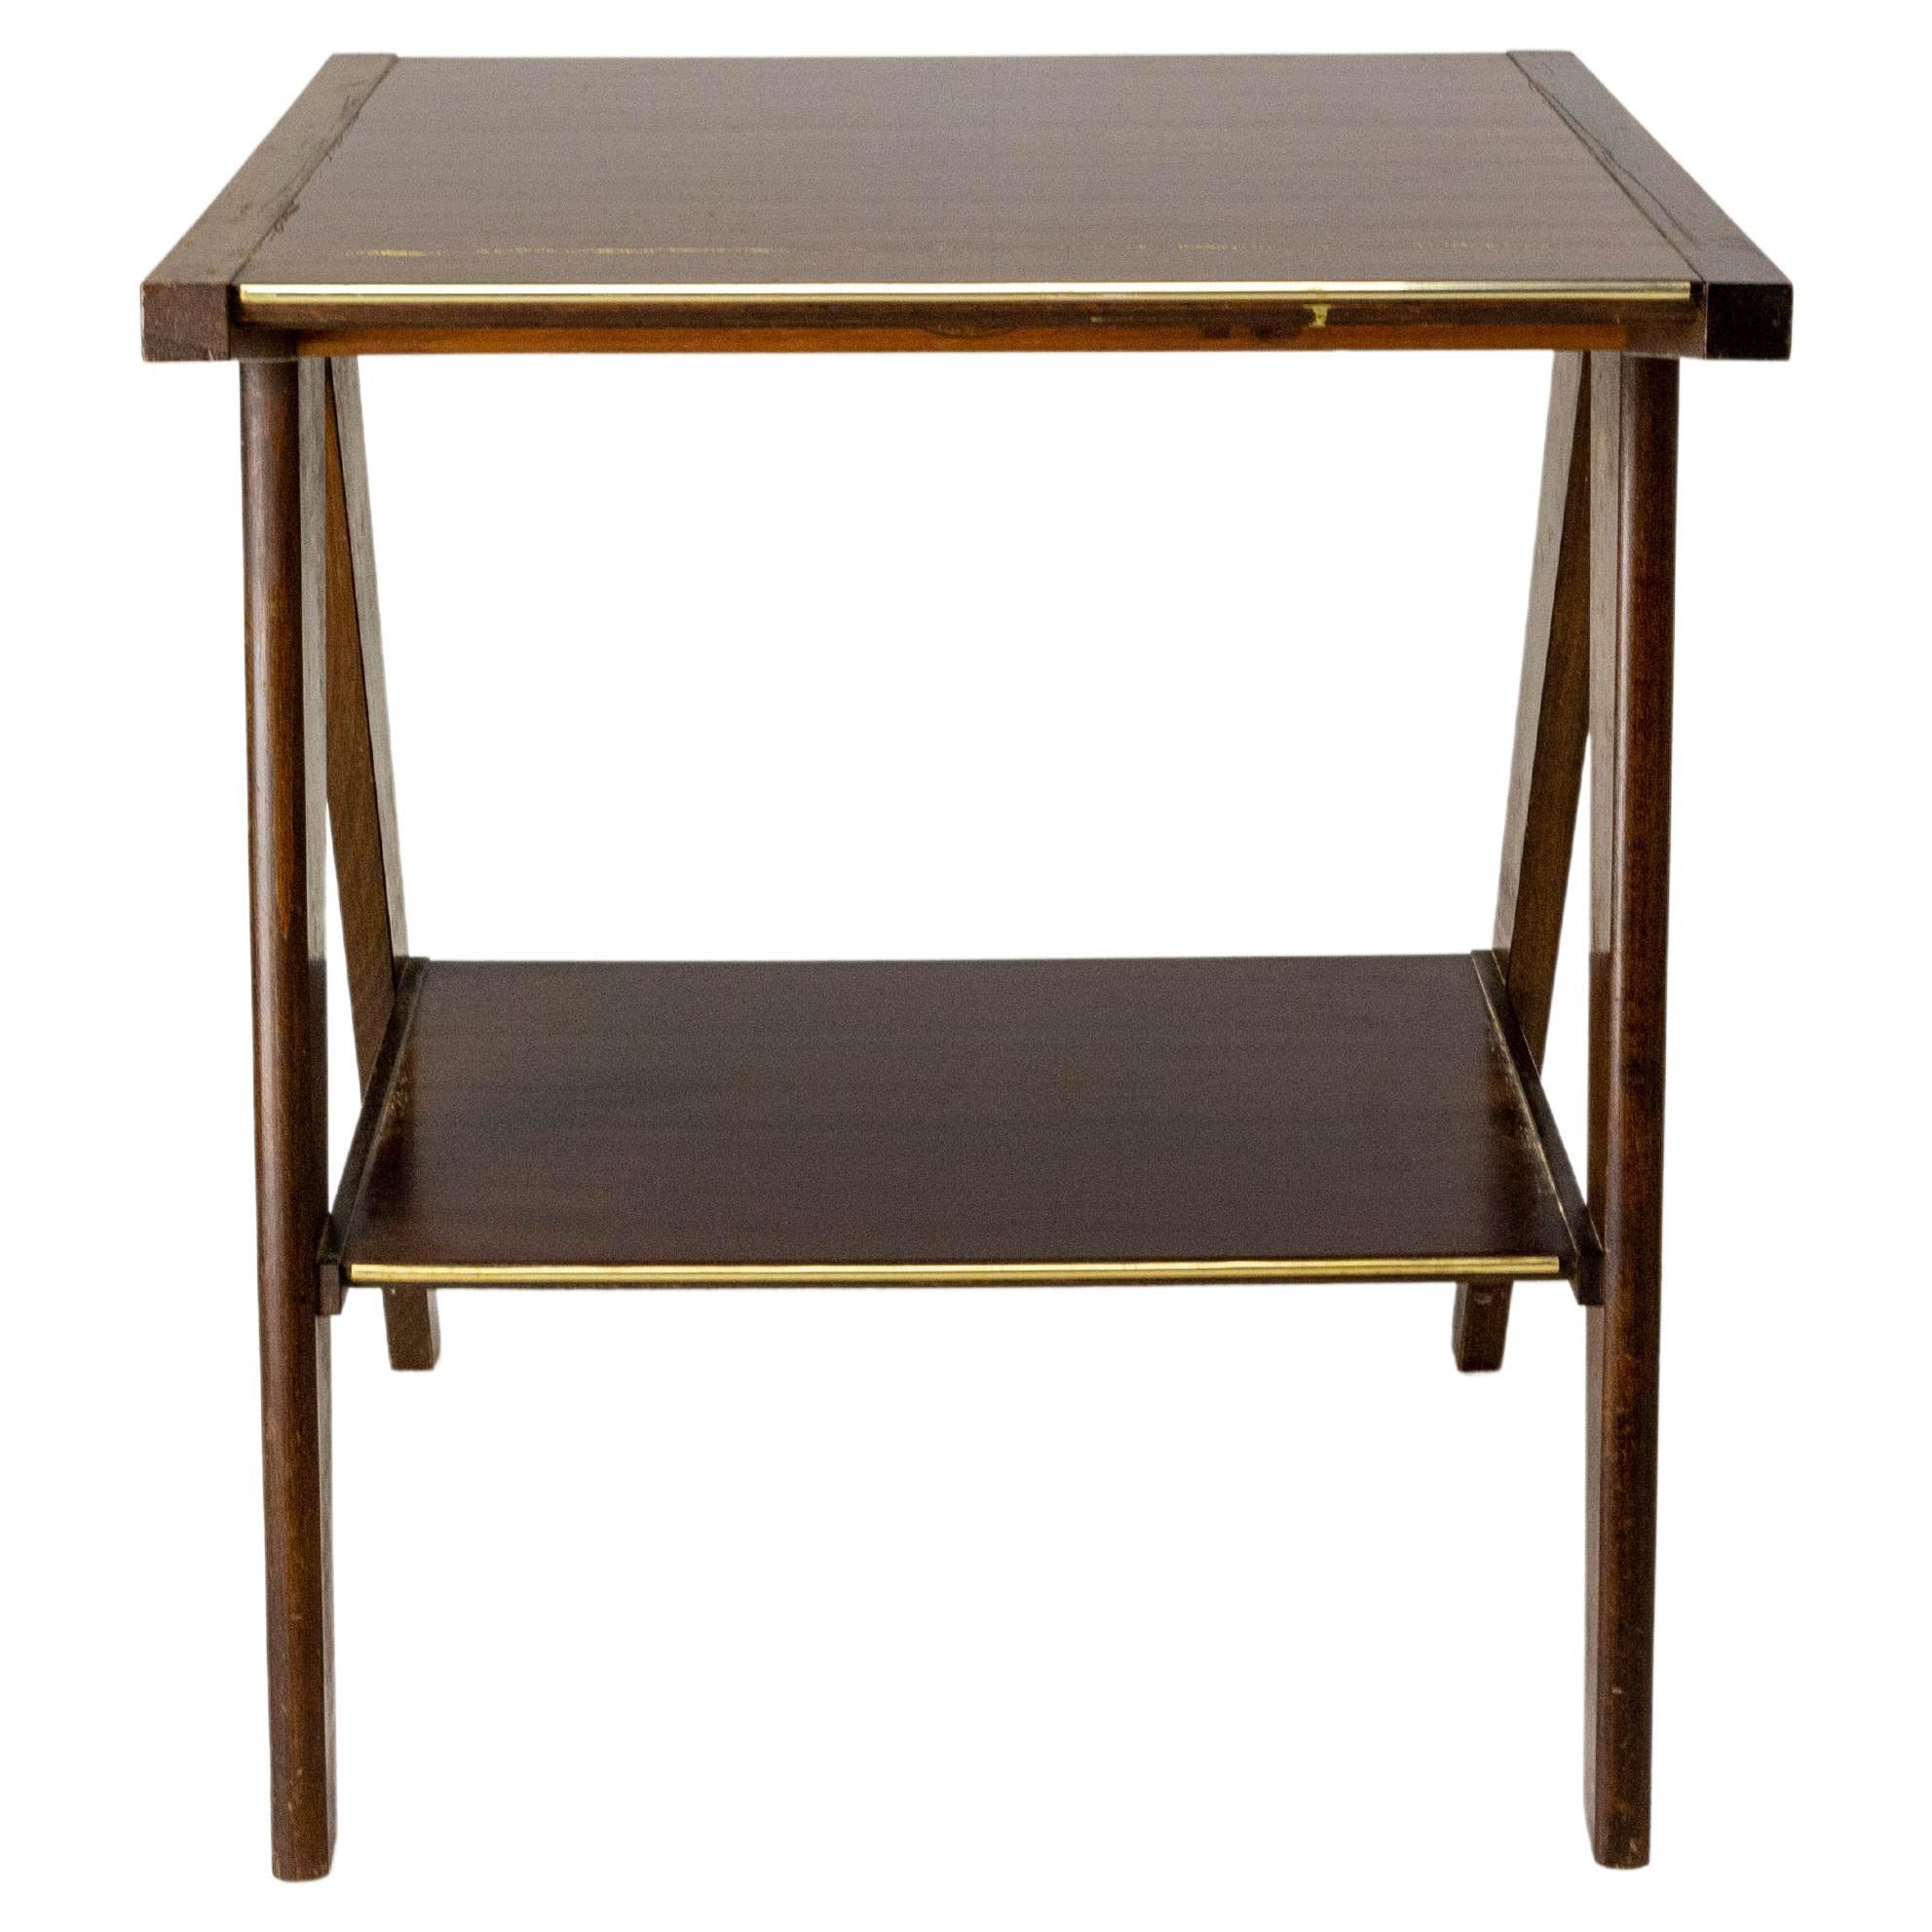 Table d'appoint ou table console à pieds en forme de corbeille Iroko avec veine dorée, France, vers 1960